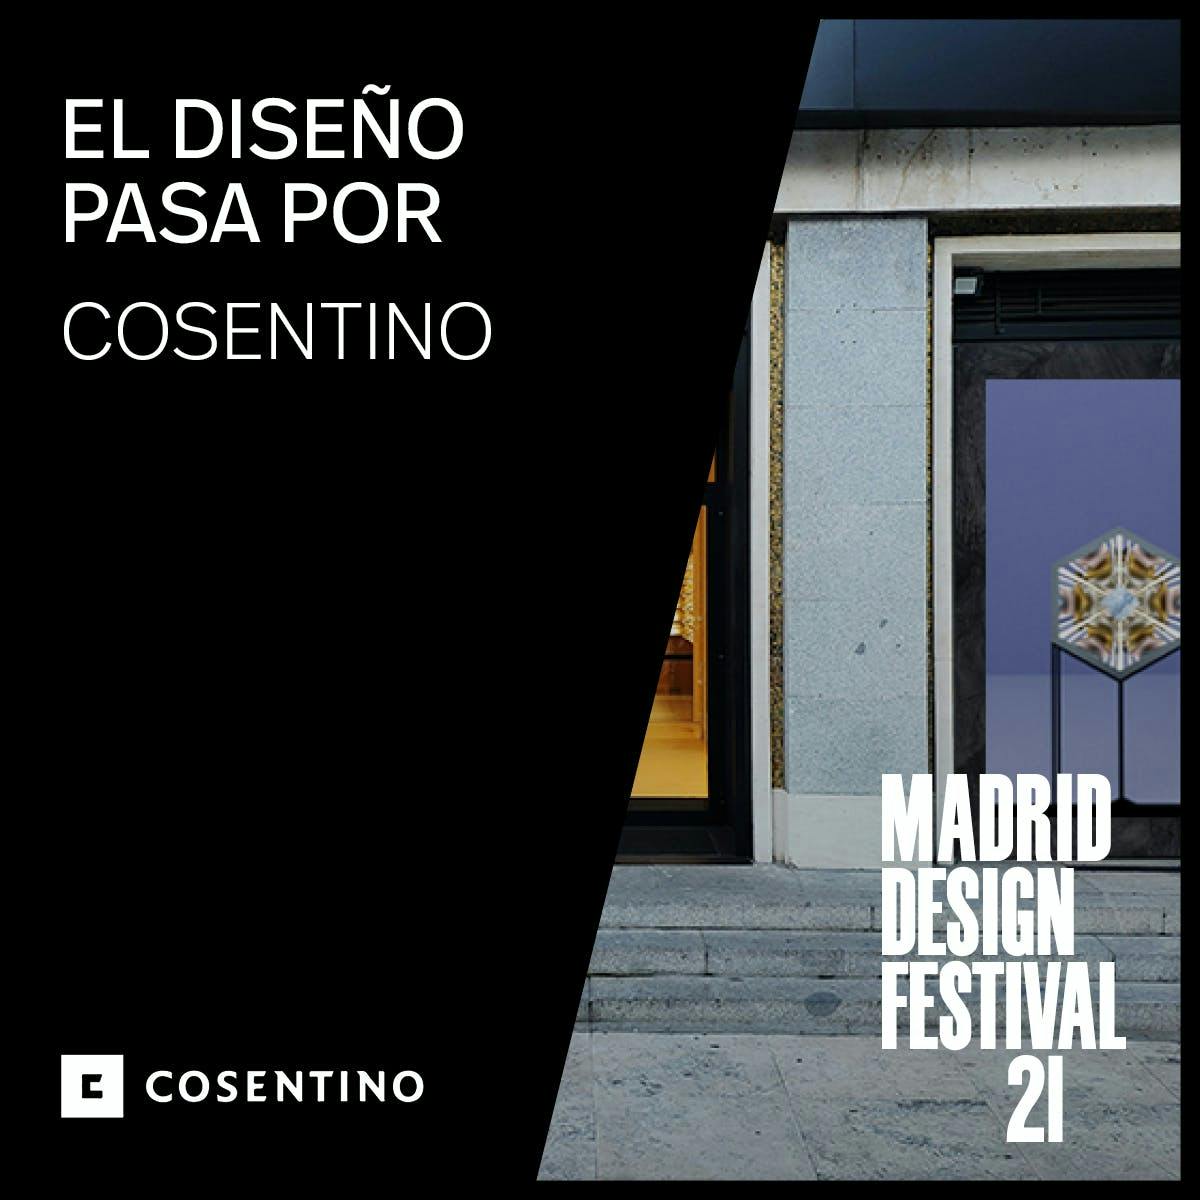 Image 31 of MDPartner COSENTINO1 1 6.jpg?auto=format%2Ccompress&ixlib=php 3.3 in Cosentino at the Madrid Design Festival 2021 - Cosentino